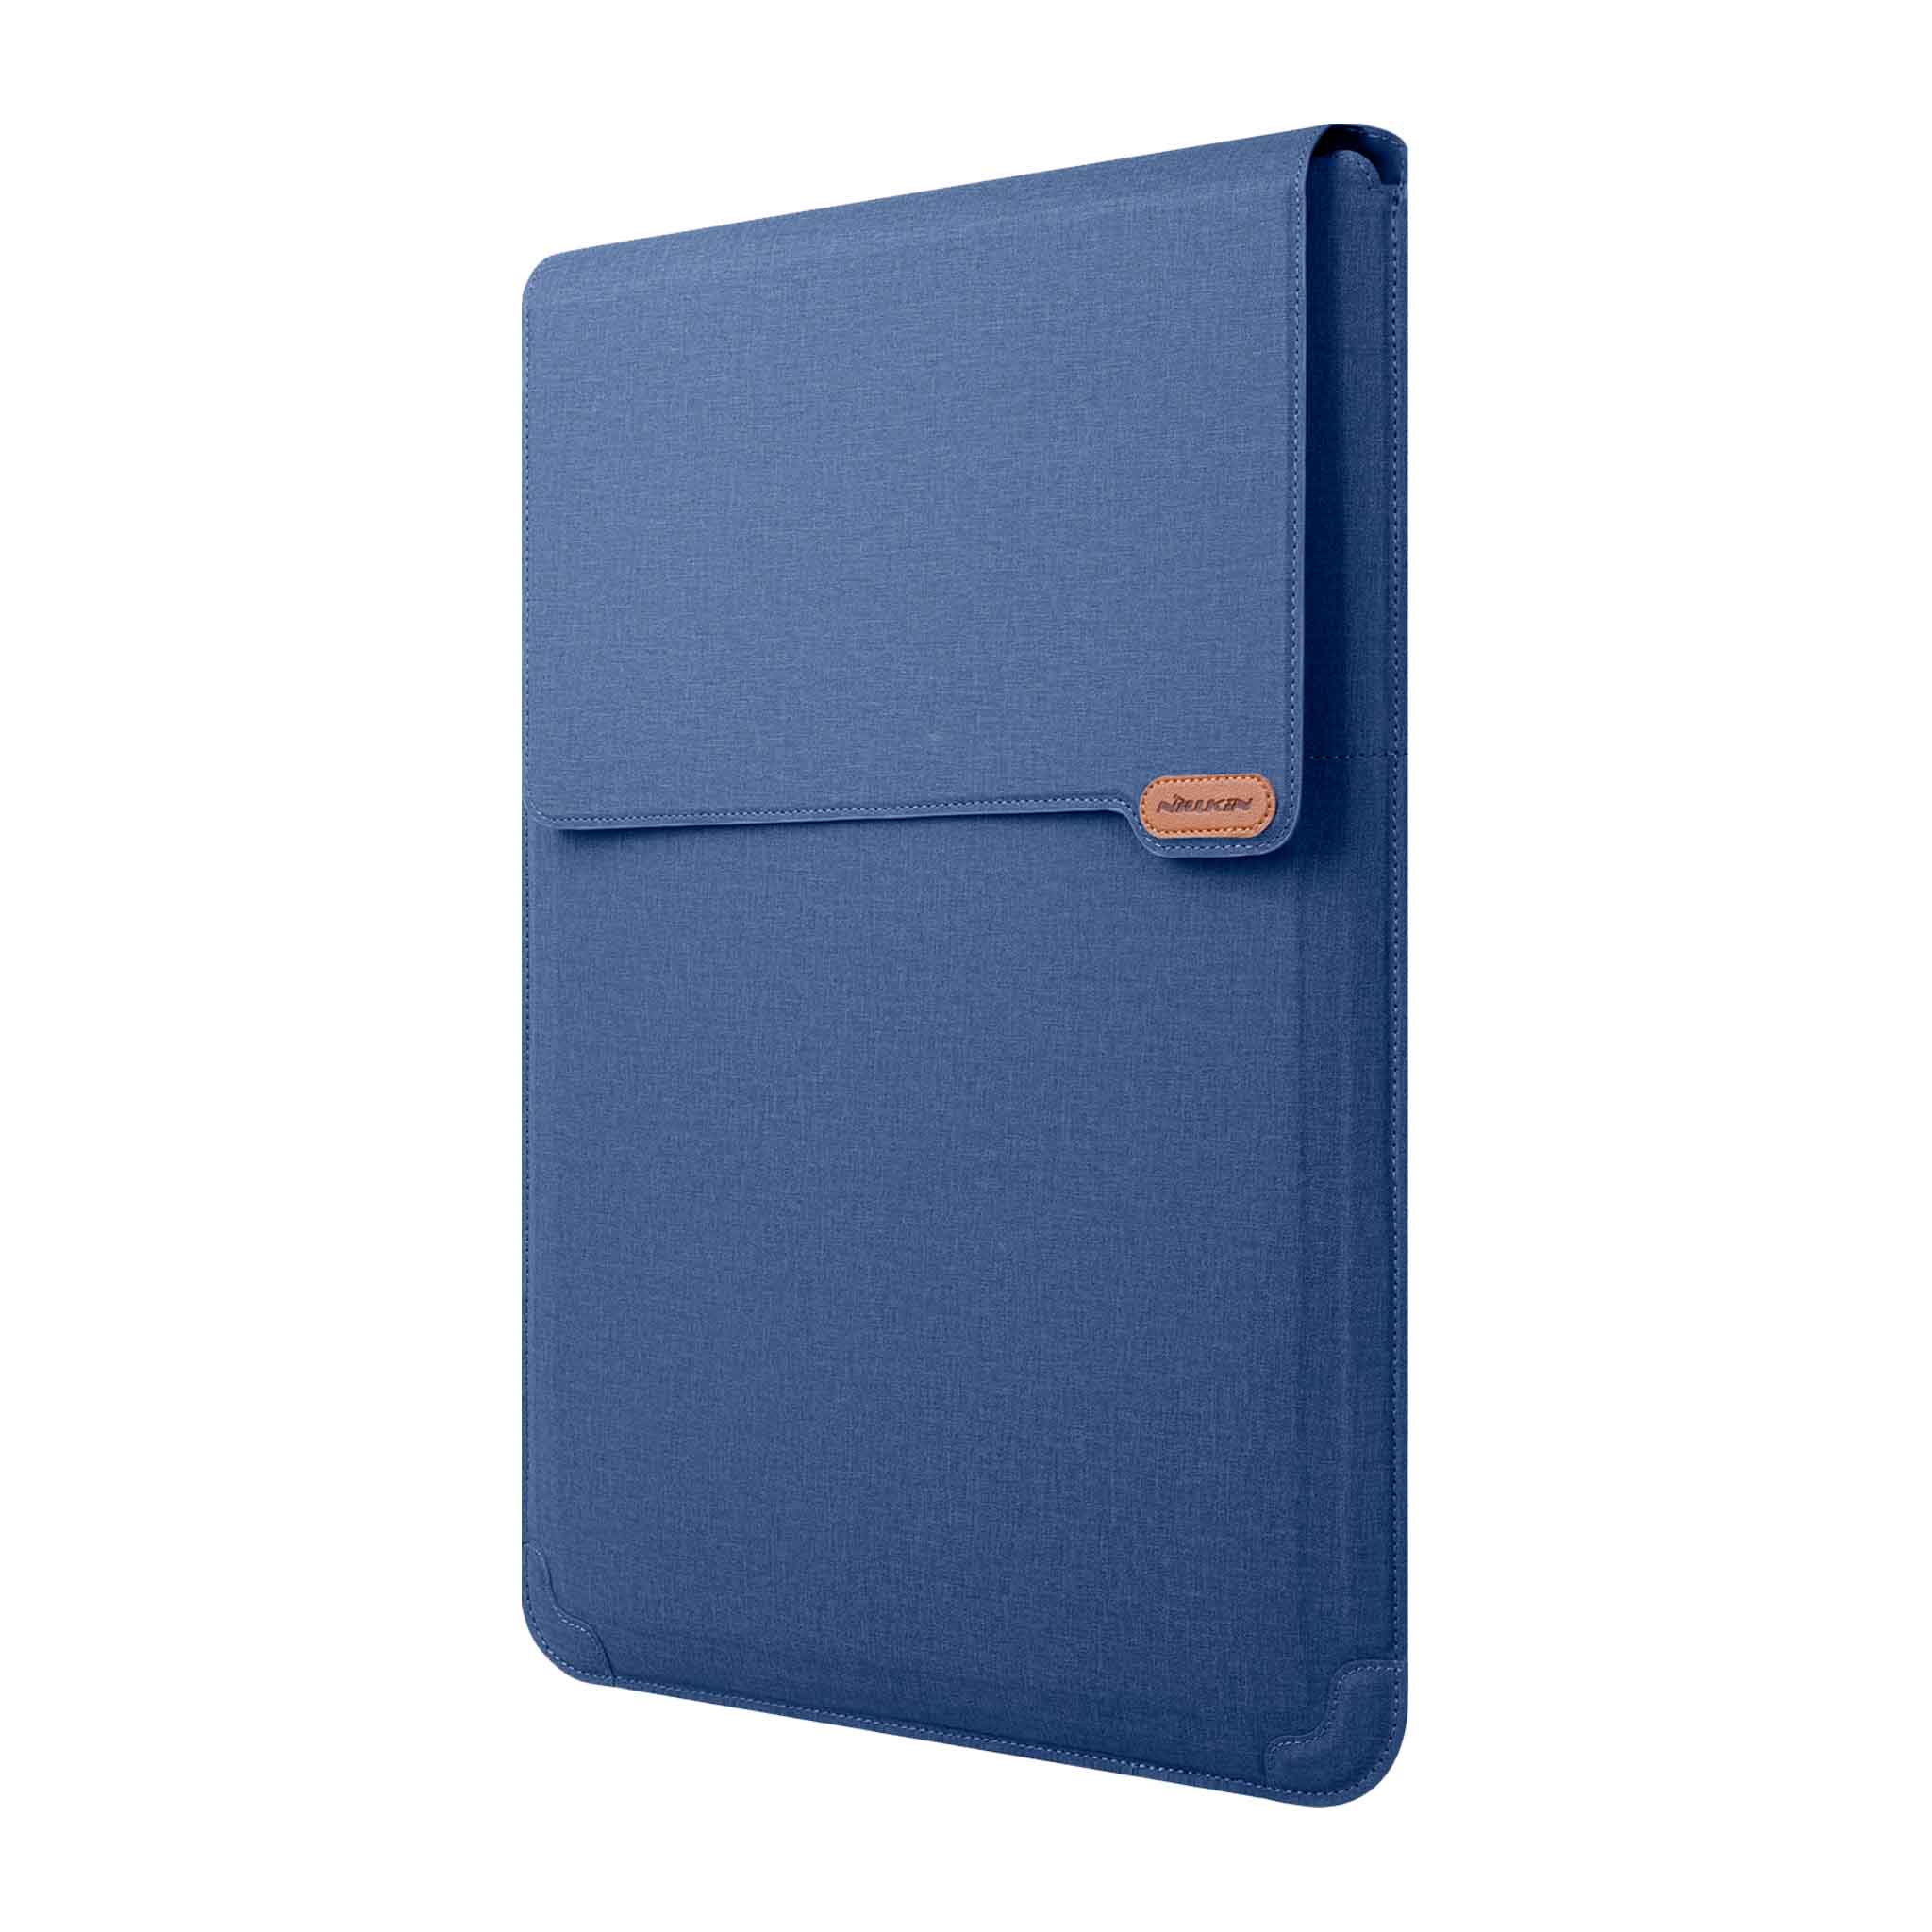 Notebook 16.1 inch / Deep Blue